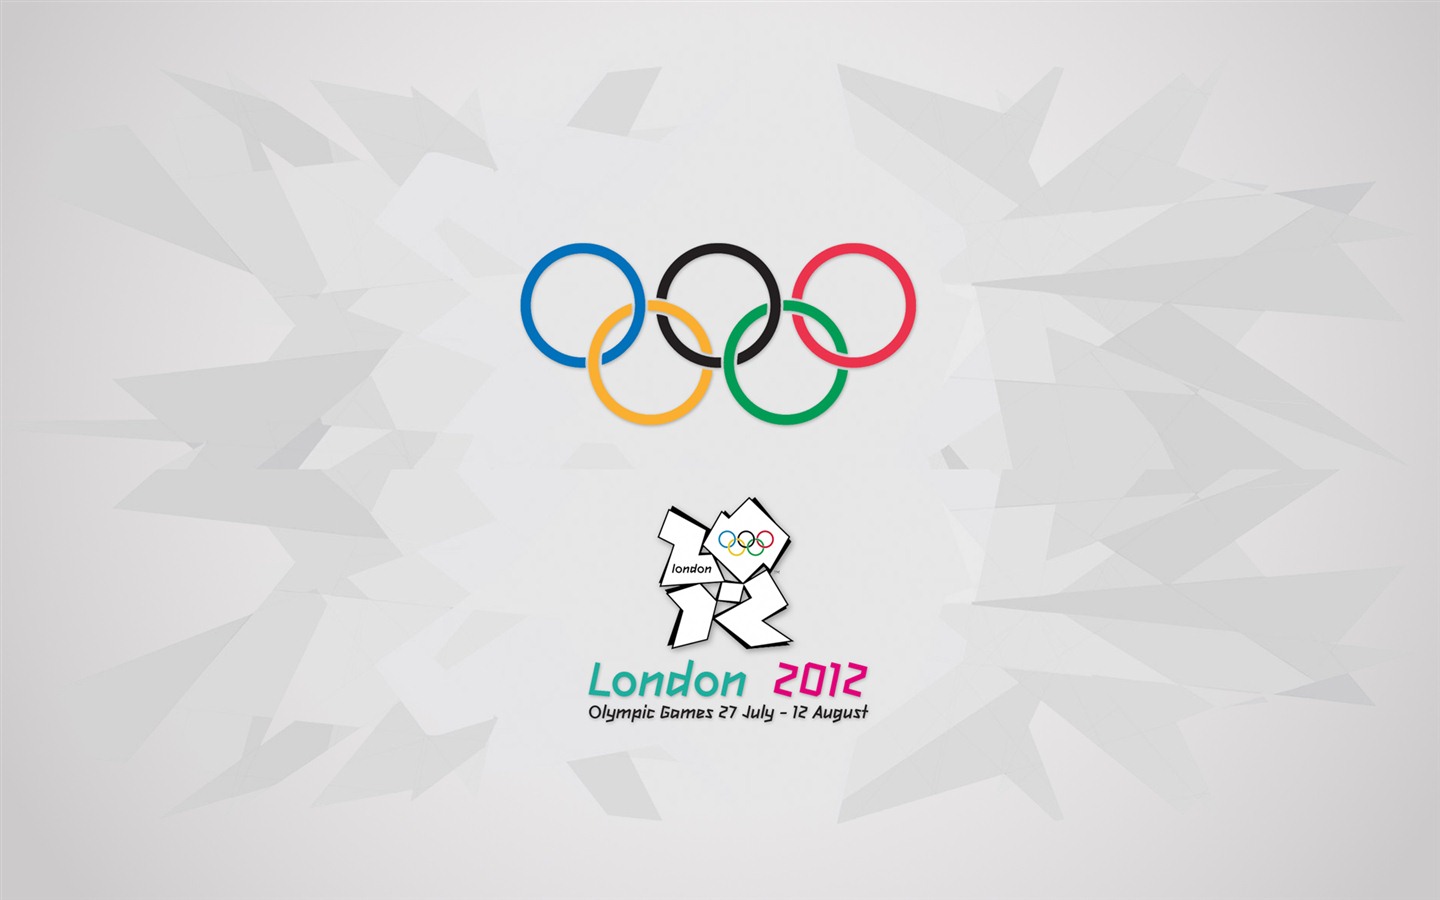 Londres 2012 Olimpiadas fondos temáticos (1) #20 - 1440x900